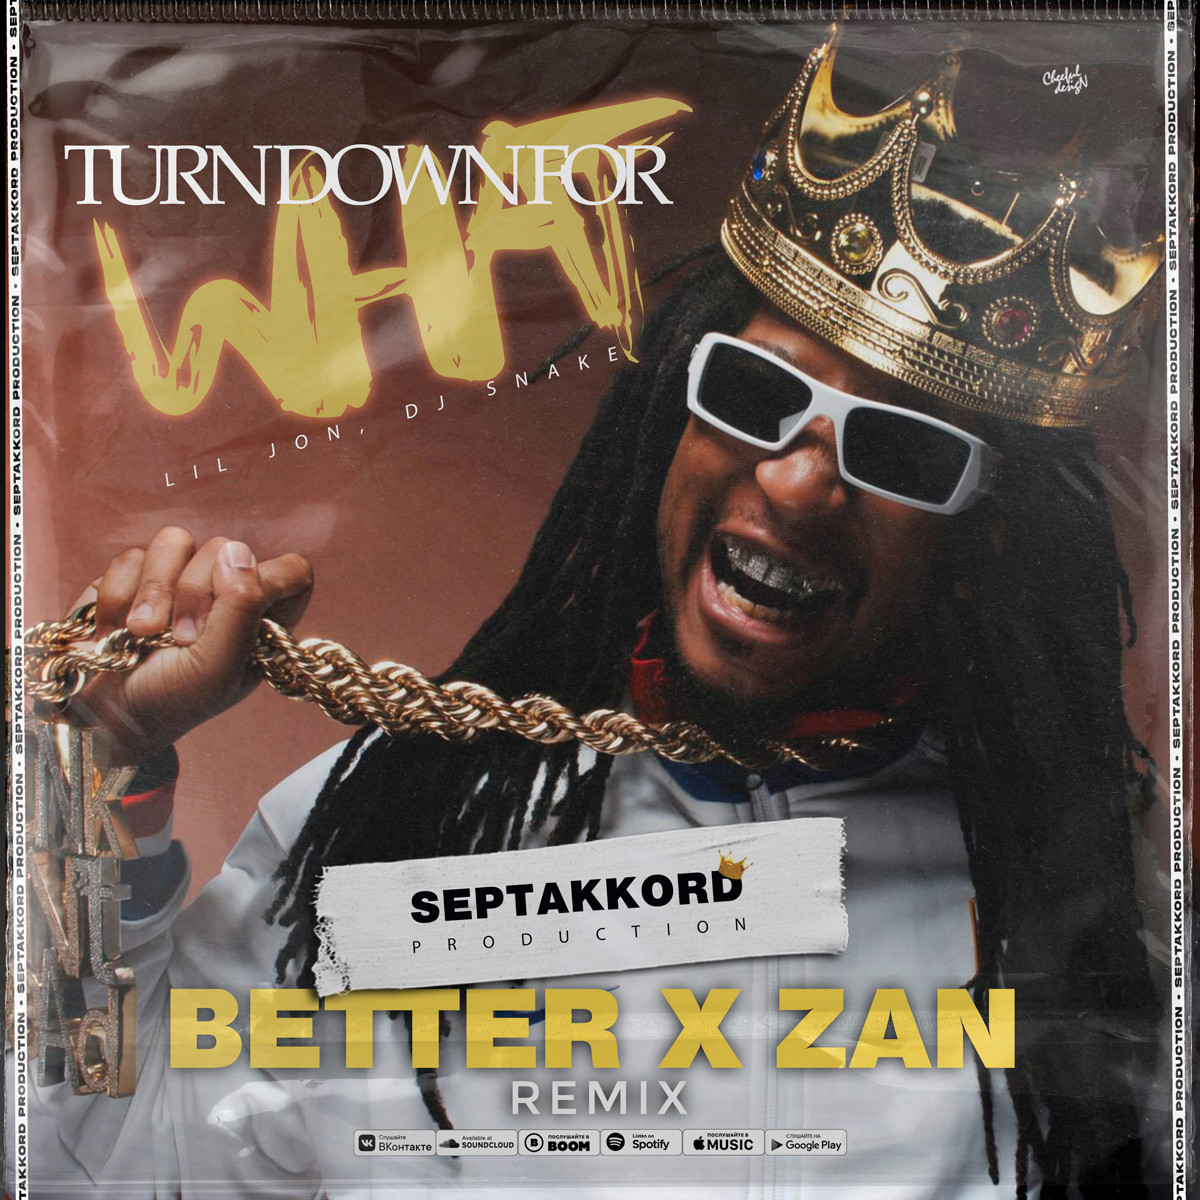 Lil Jon Dj Snake Turn Down For What Better X Zan Radio Edit Dj